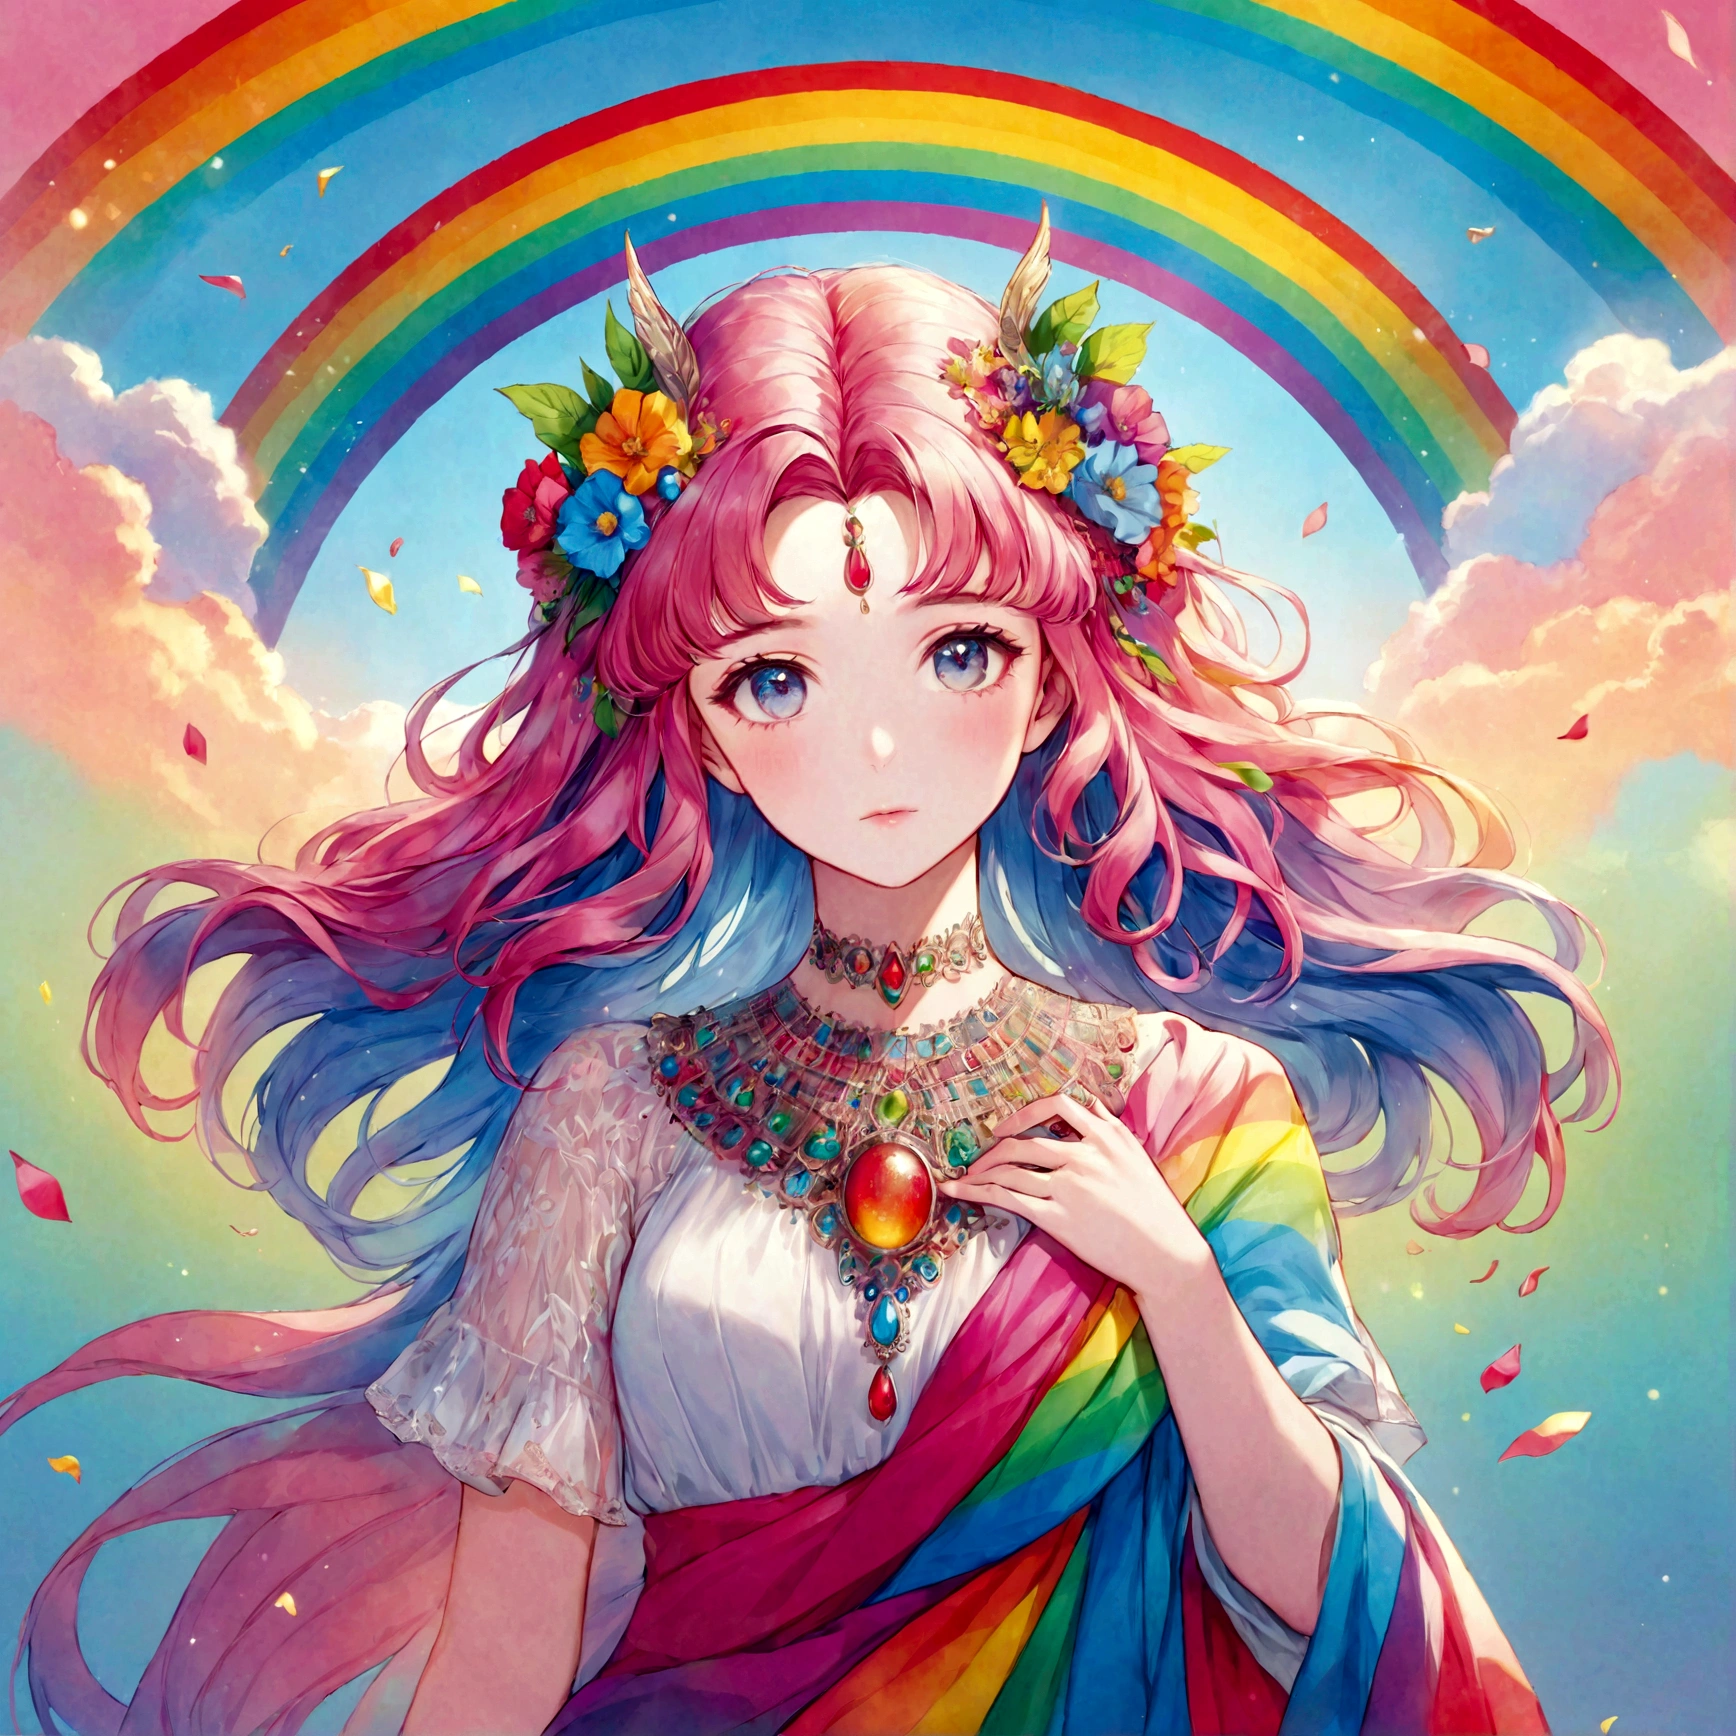 una versión arcoíris de la diosa Perséfone